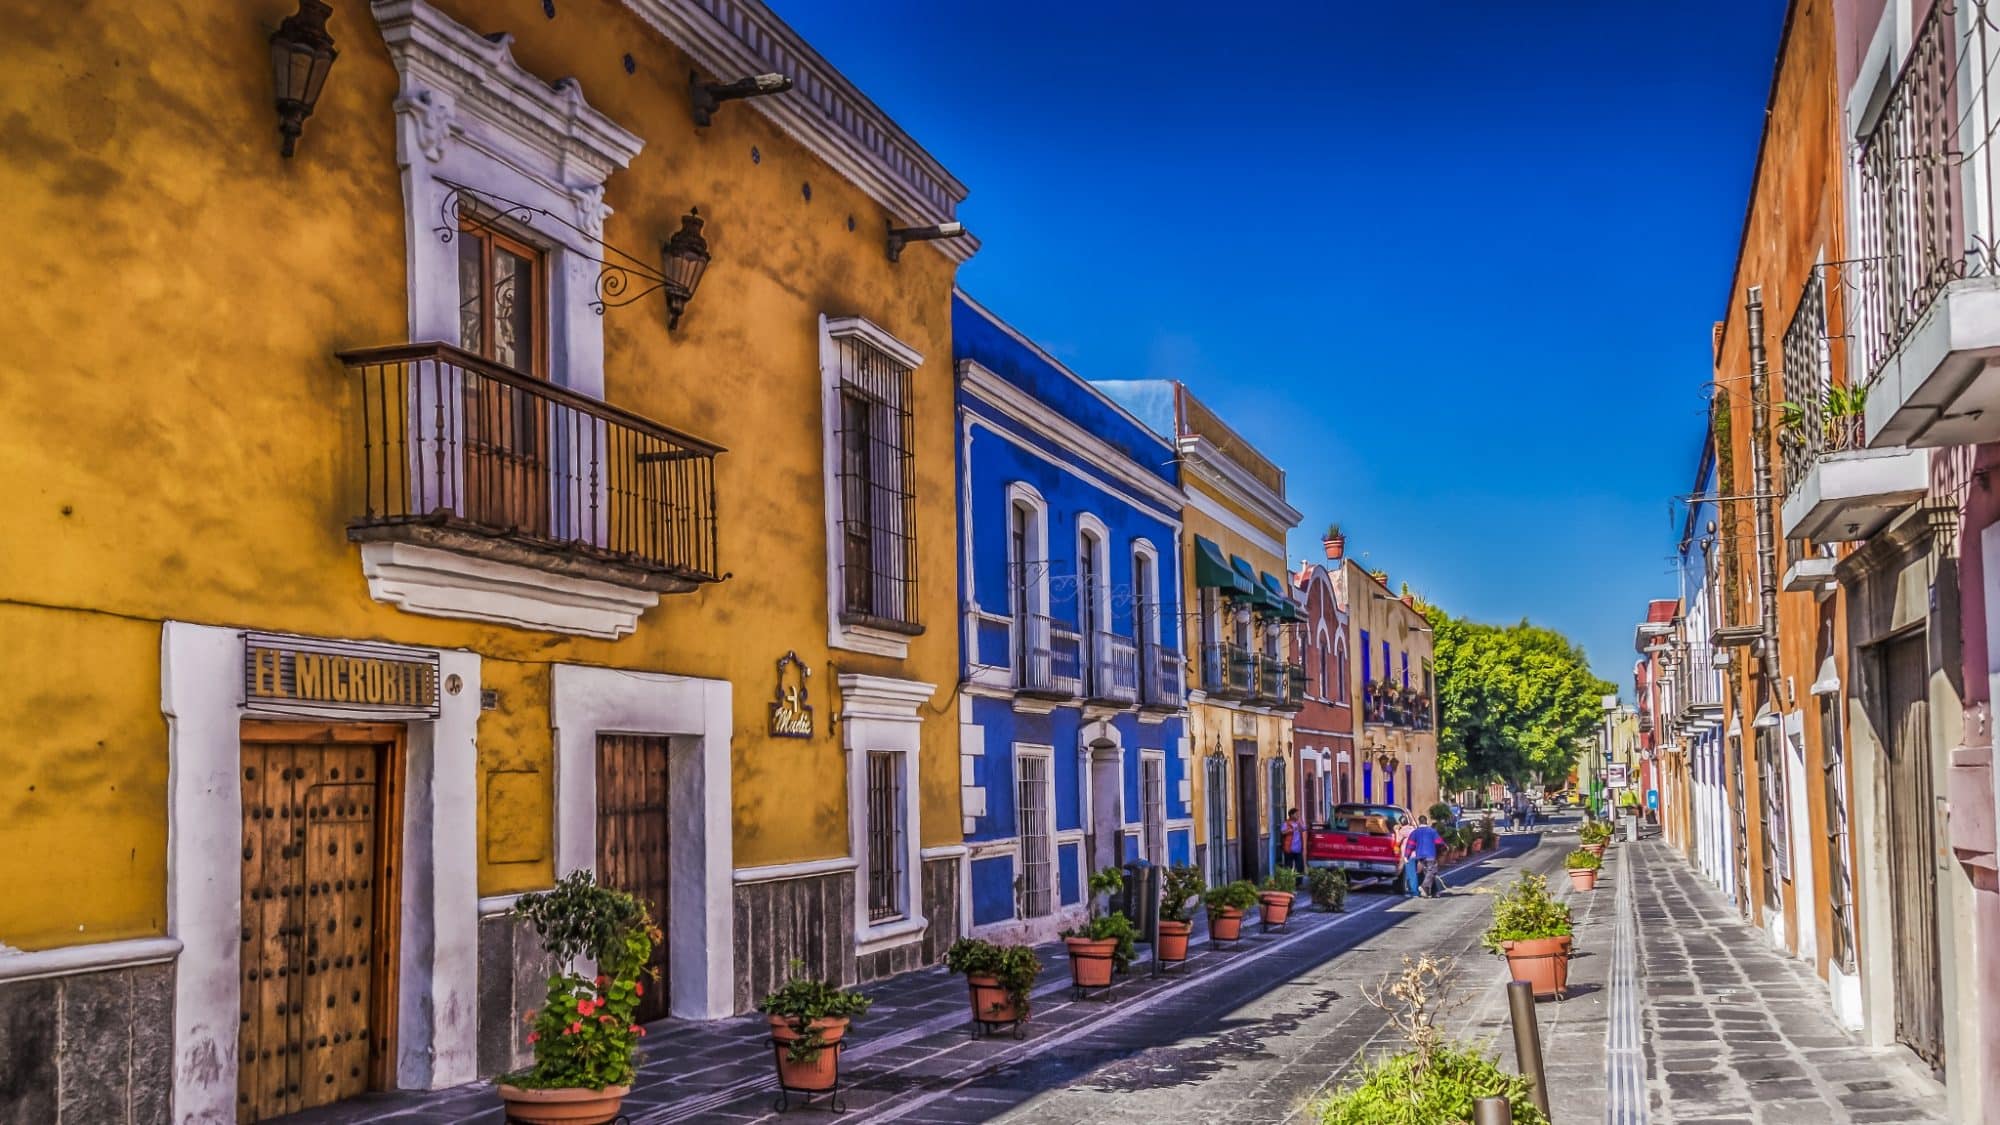 8 Lugares Que Visitar En El Centro De Puebla Mexiconoce